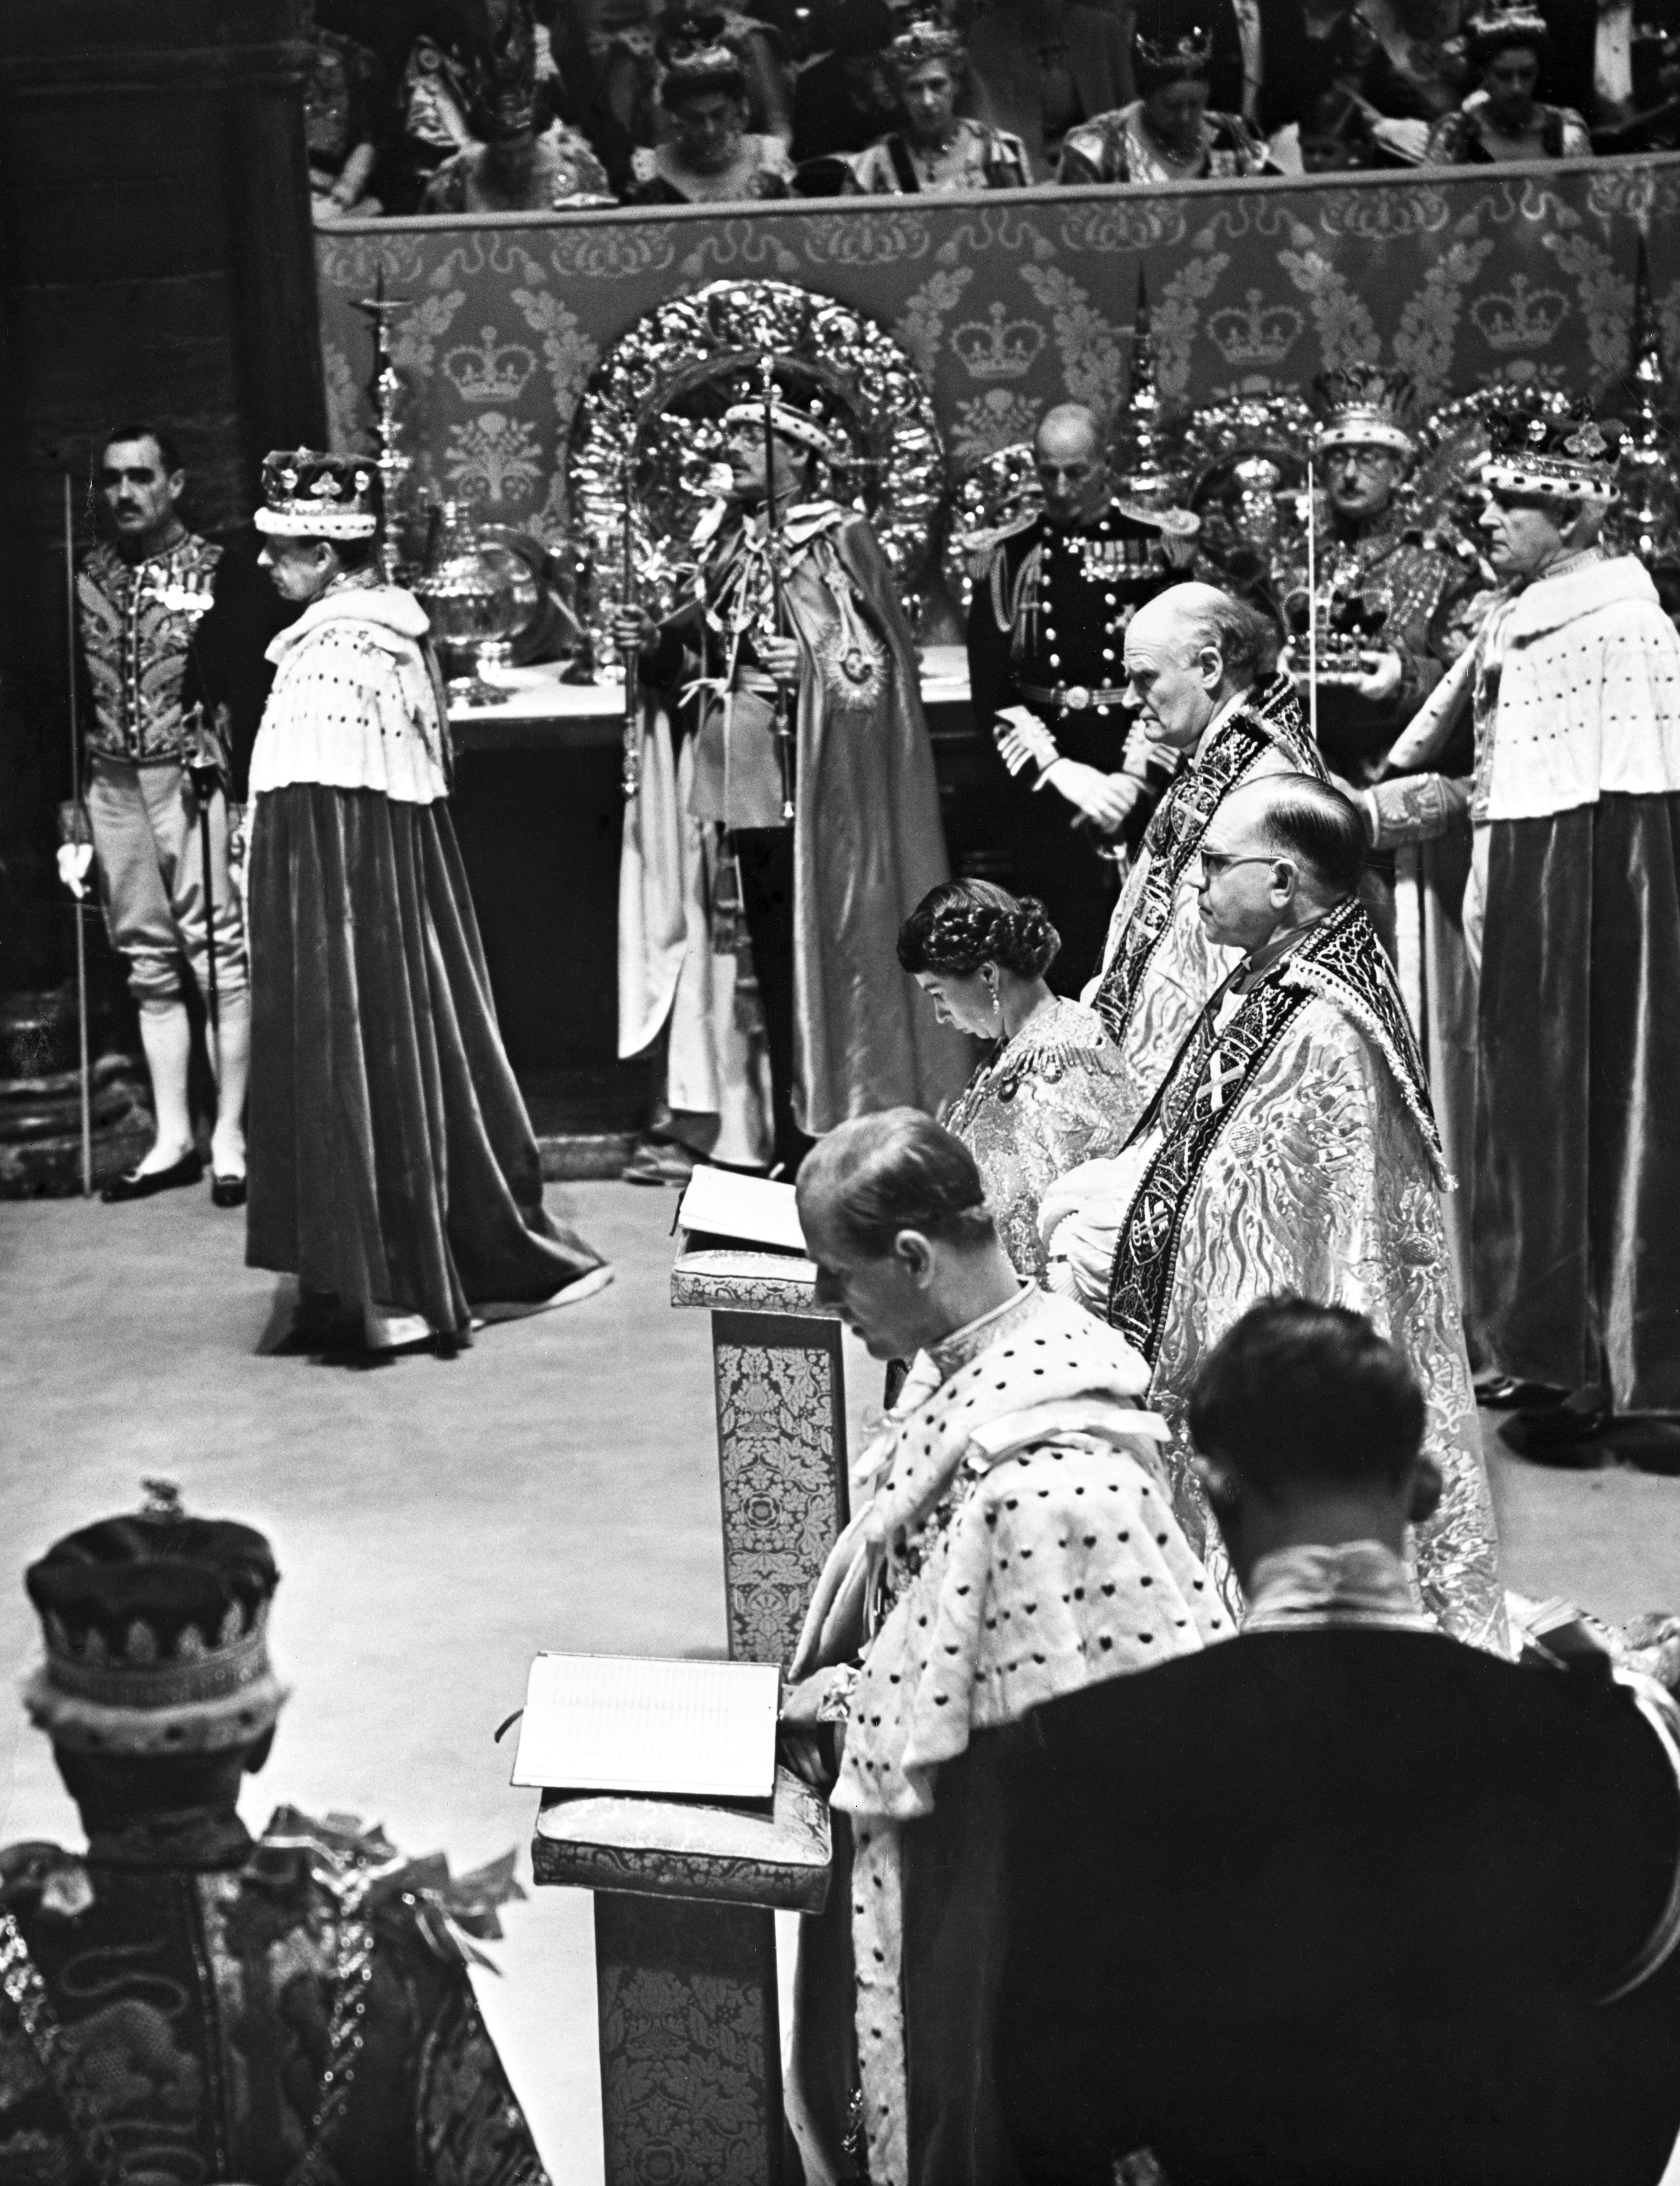 La reina y su marido, el duque de Edimburgo, arrodillados uno al lado del otro frente al altar para recibir la comunión en la abadía de Westminster, después de las ceremonias de coronación y homenaje.